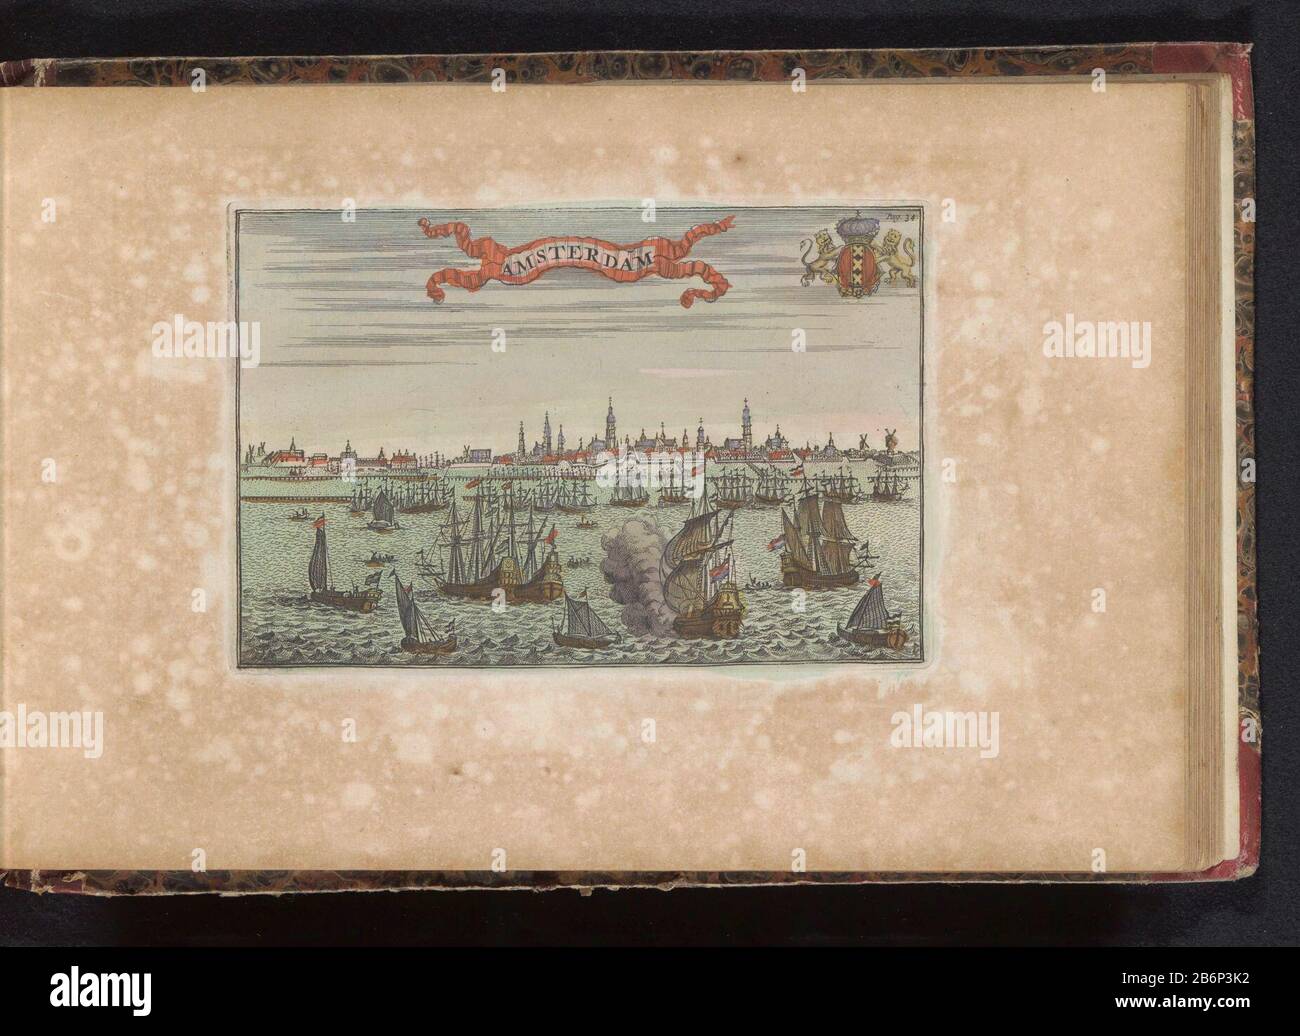 Gezicht op Amsterdam Amsterdam (titel op object) Vista de Amsterdam, en  primer plano barcos en el IJ. Parte de un atlas de 223 mapas de países y  ciudades y escenas de guerra